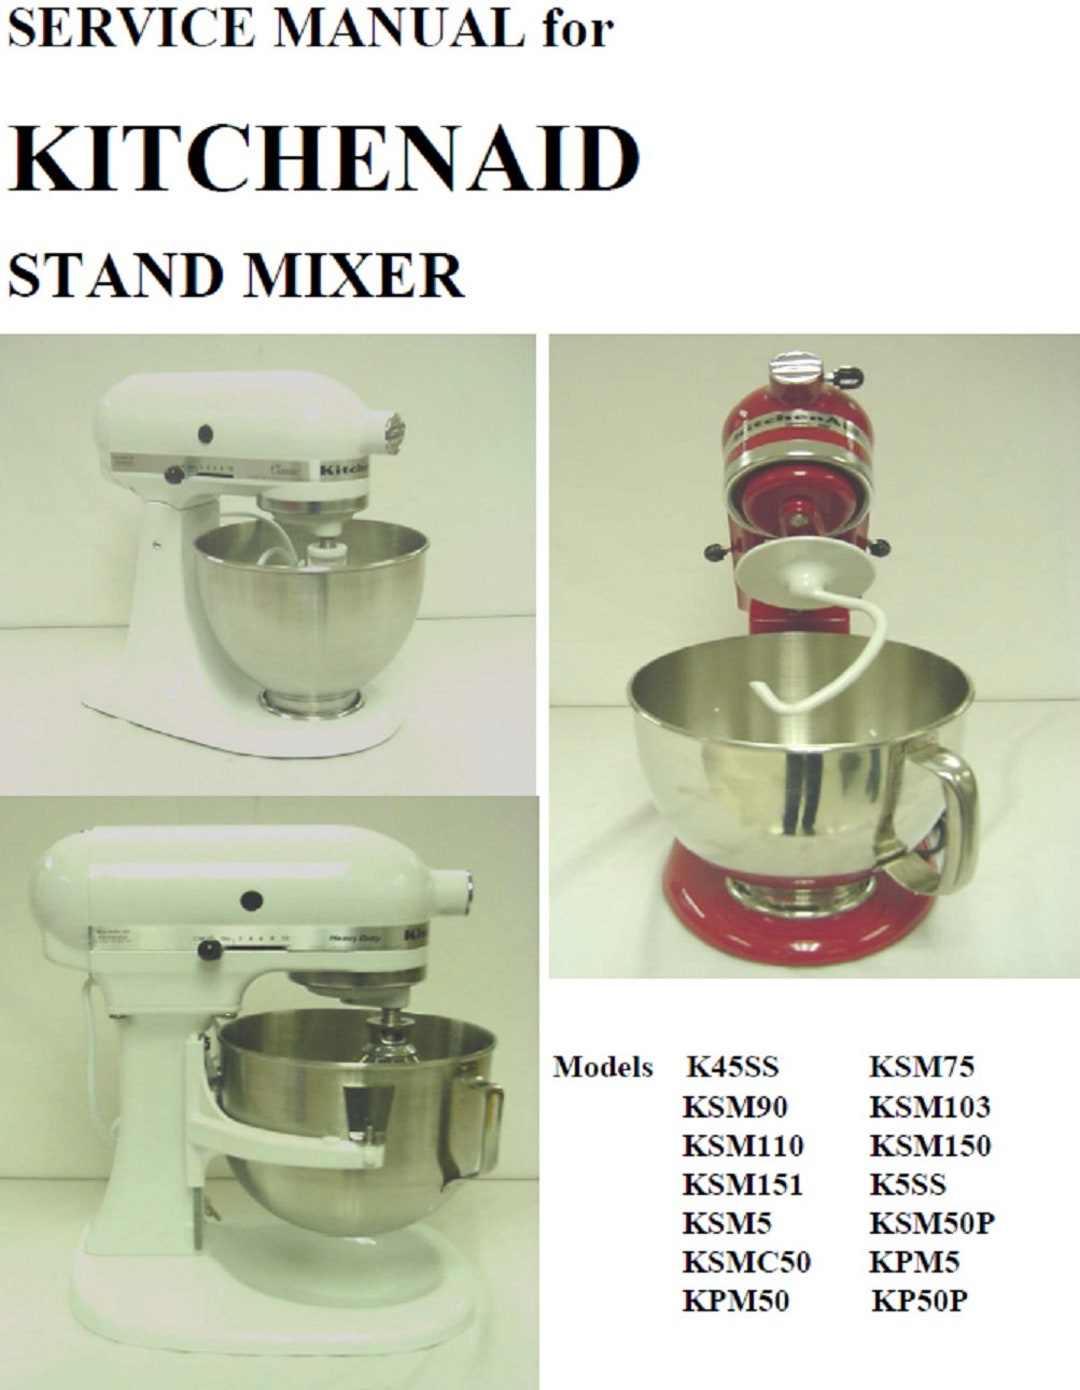 K5SS KitchenAid Mixer Parts & Repair Help 